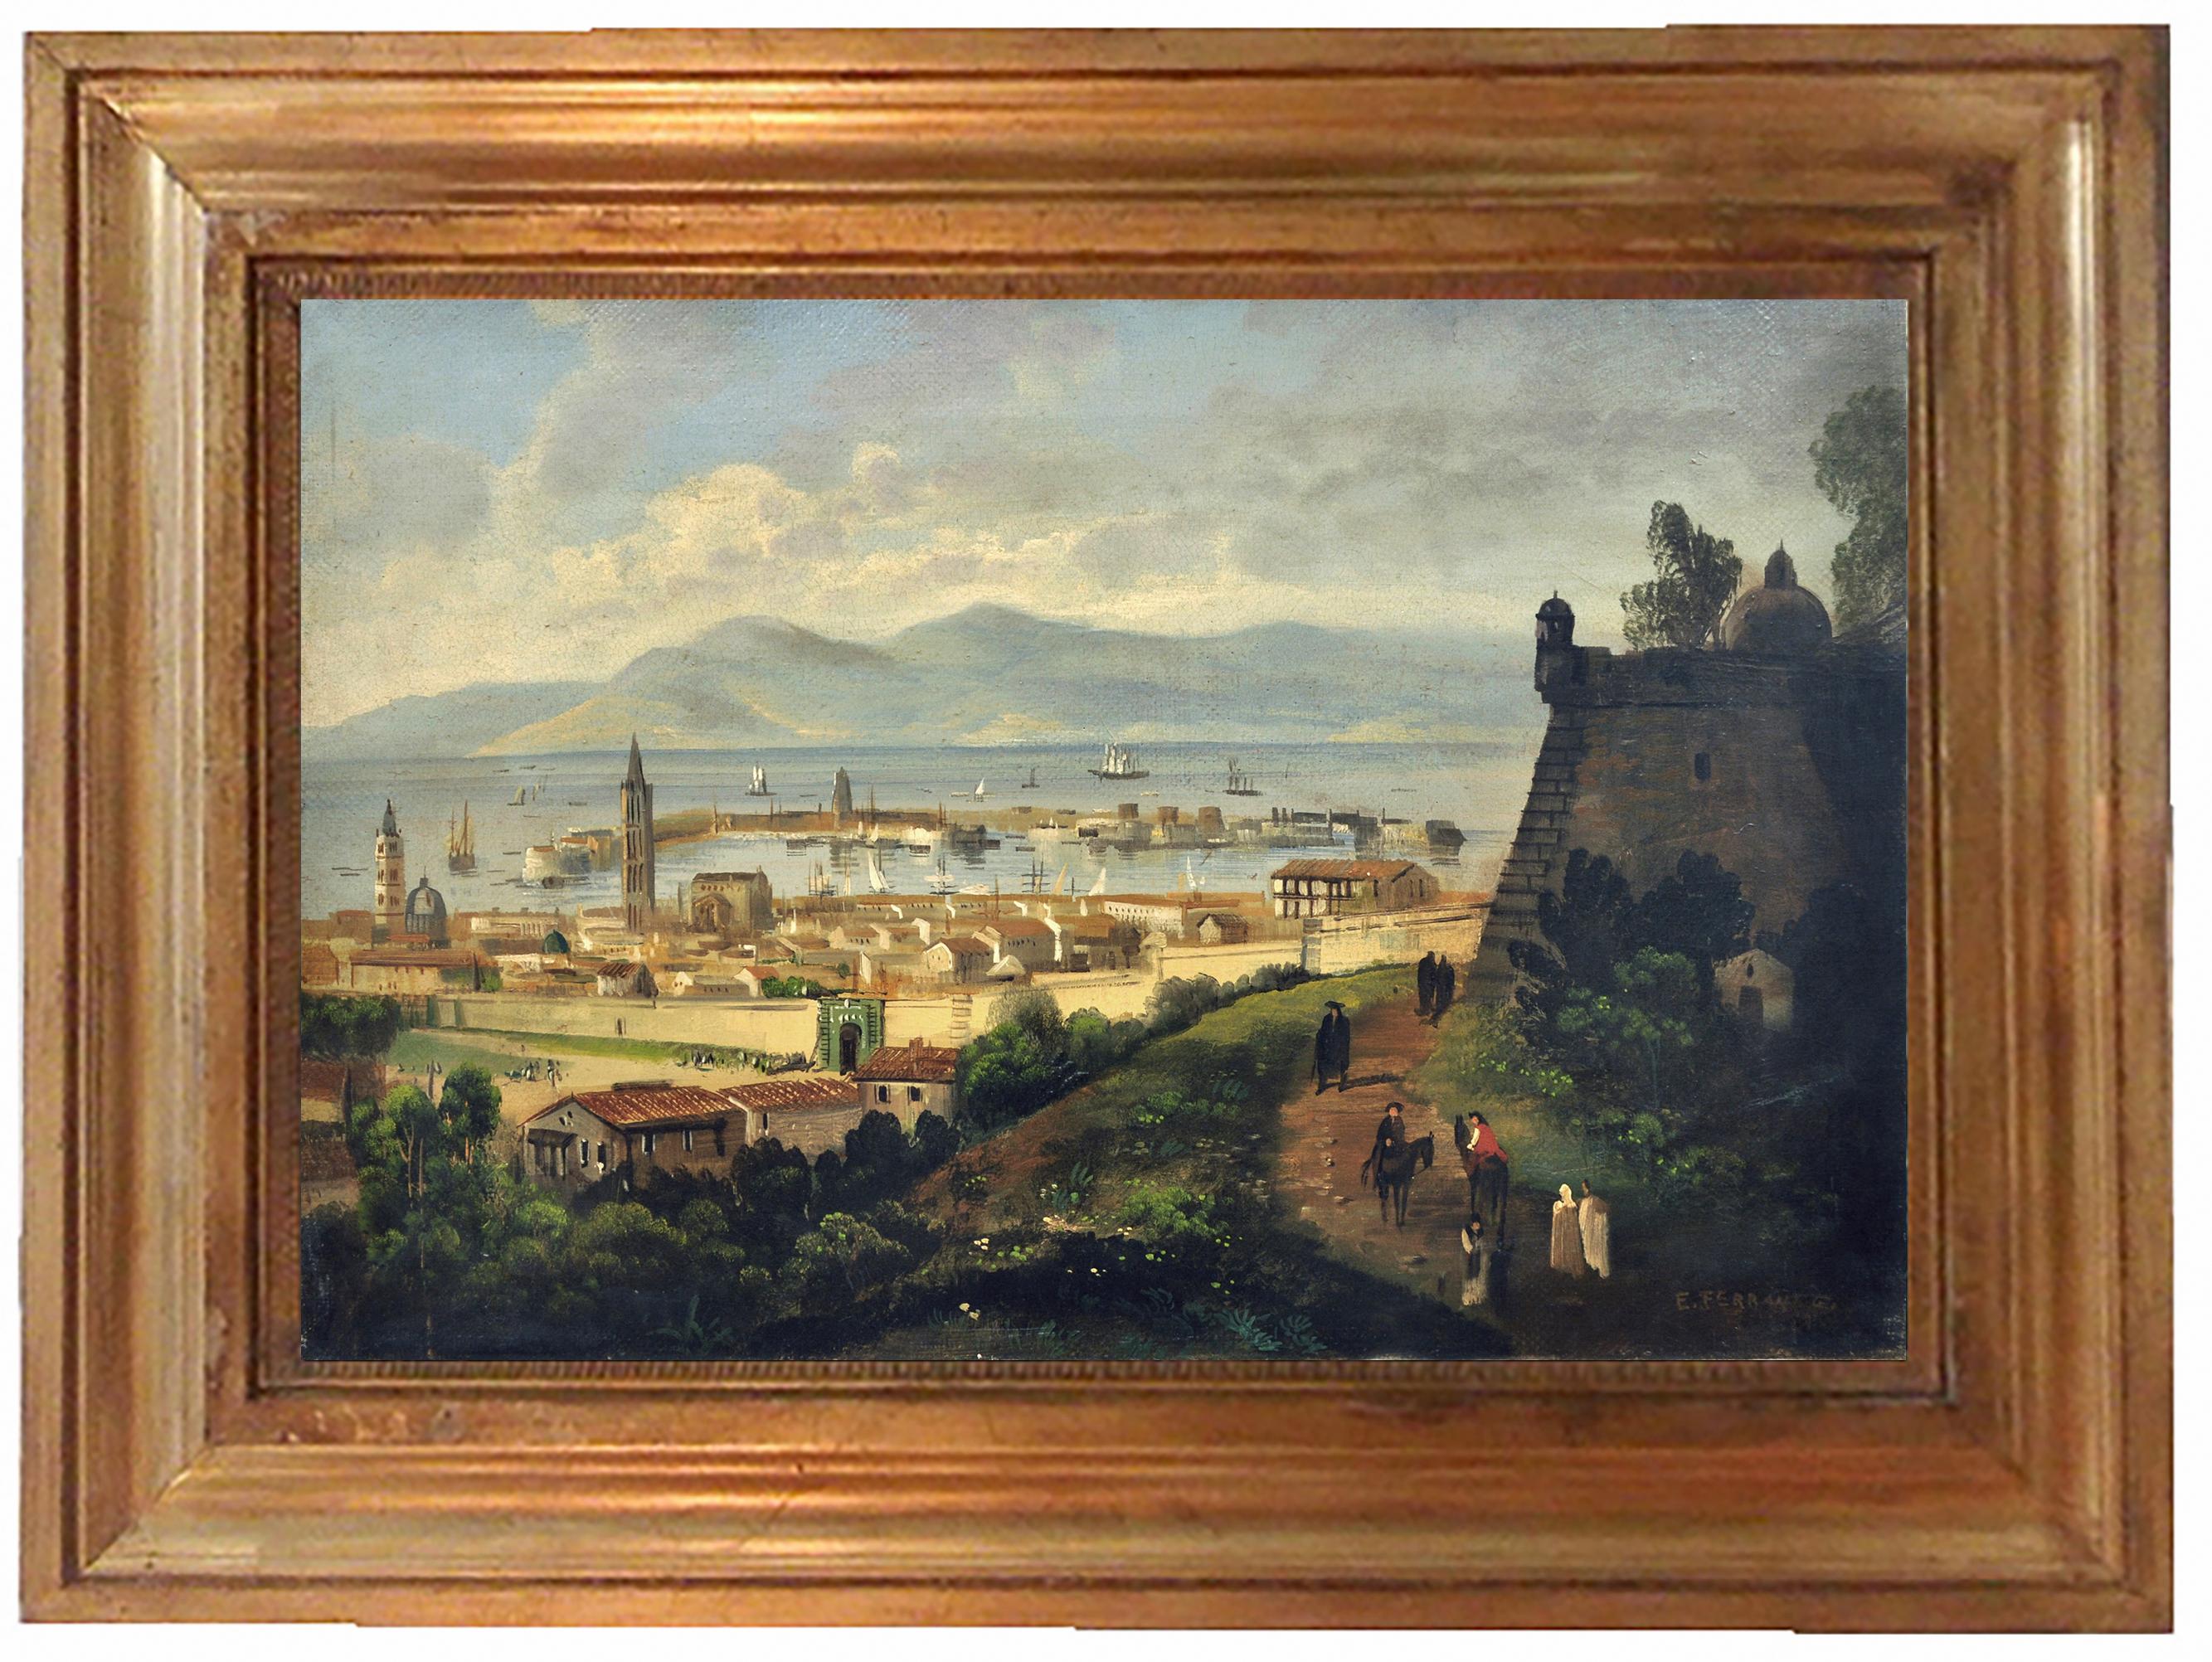 MESSINA- Posillipo School -Oil on Canvas Italian Landscape Painting